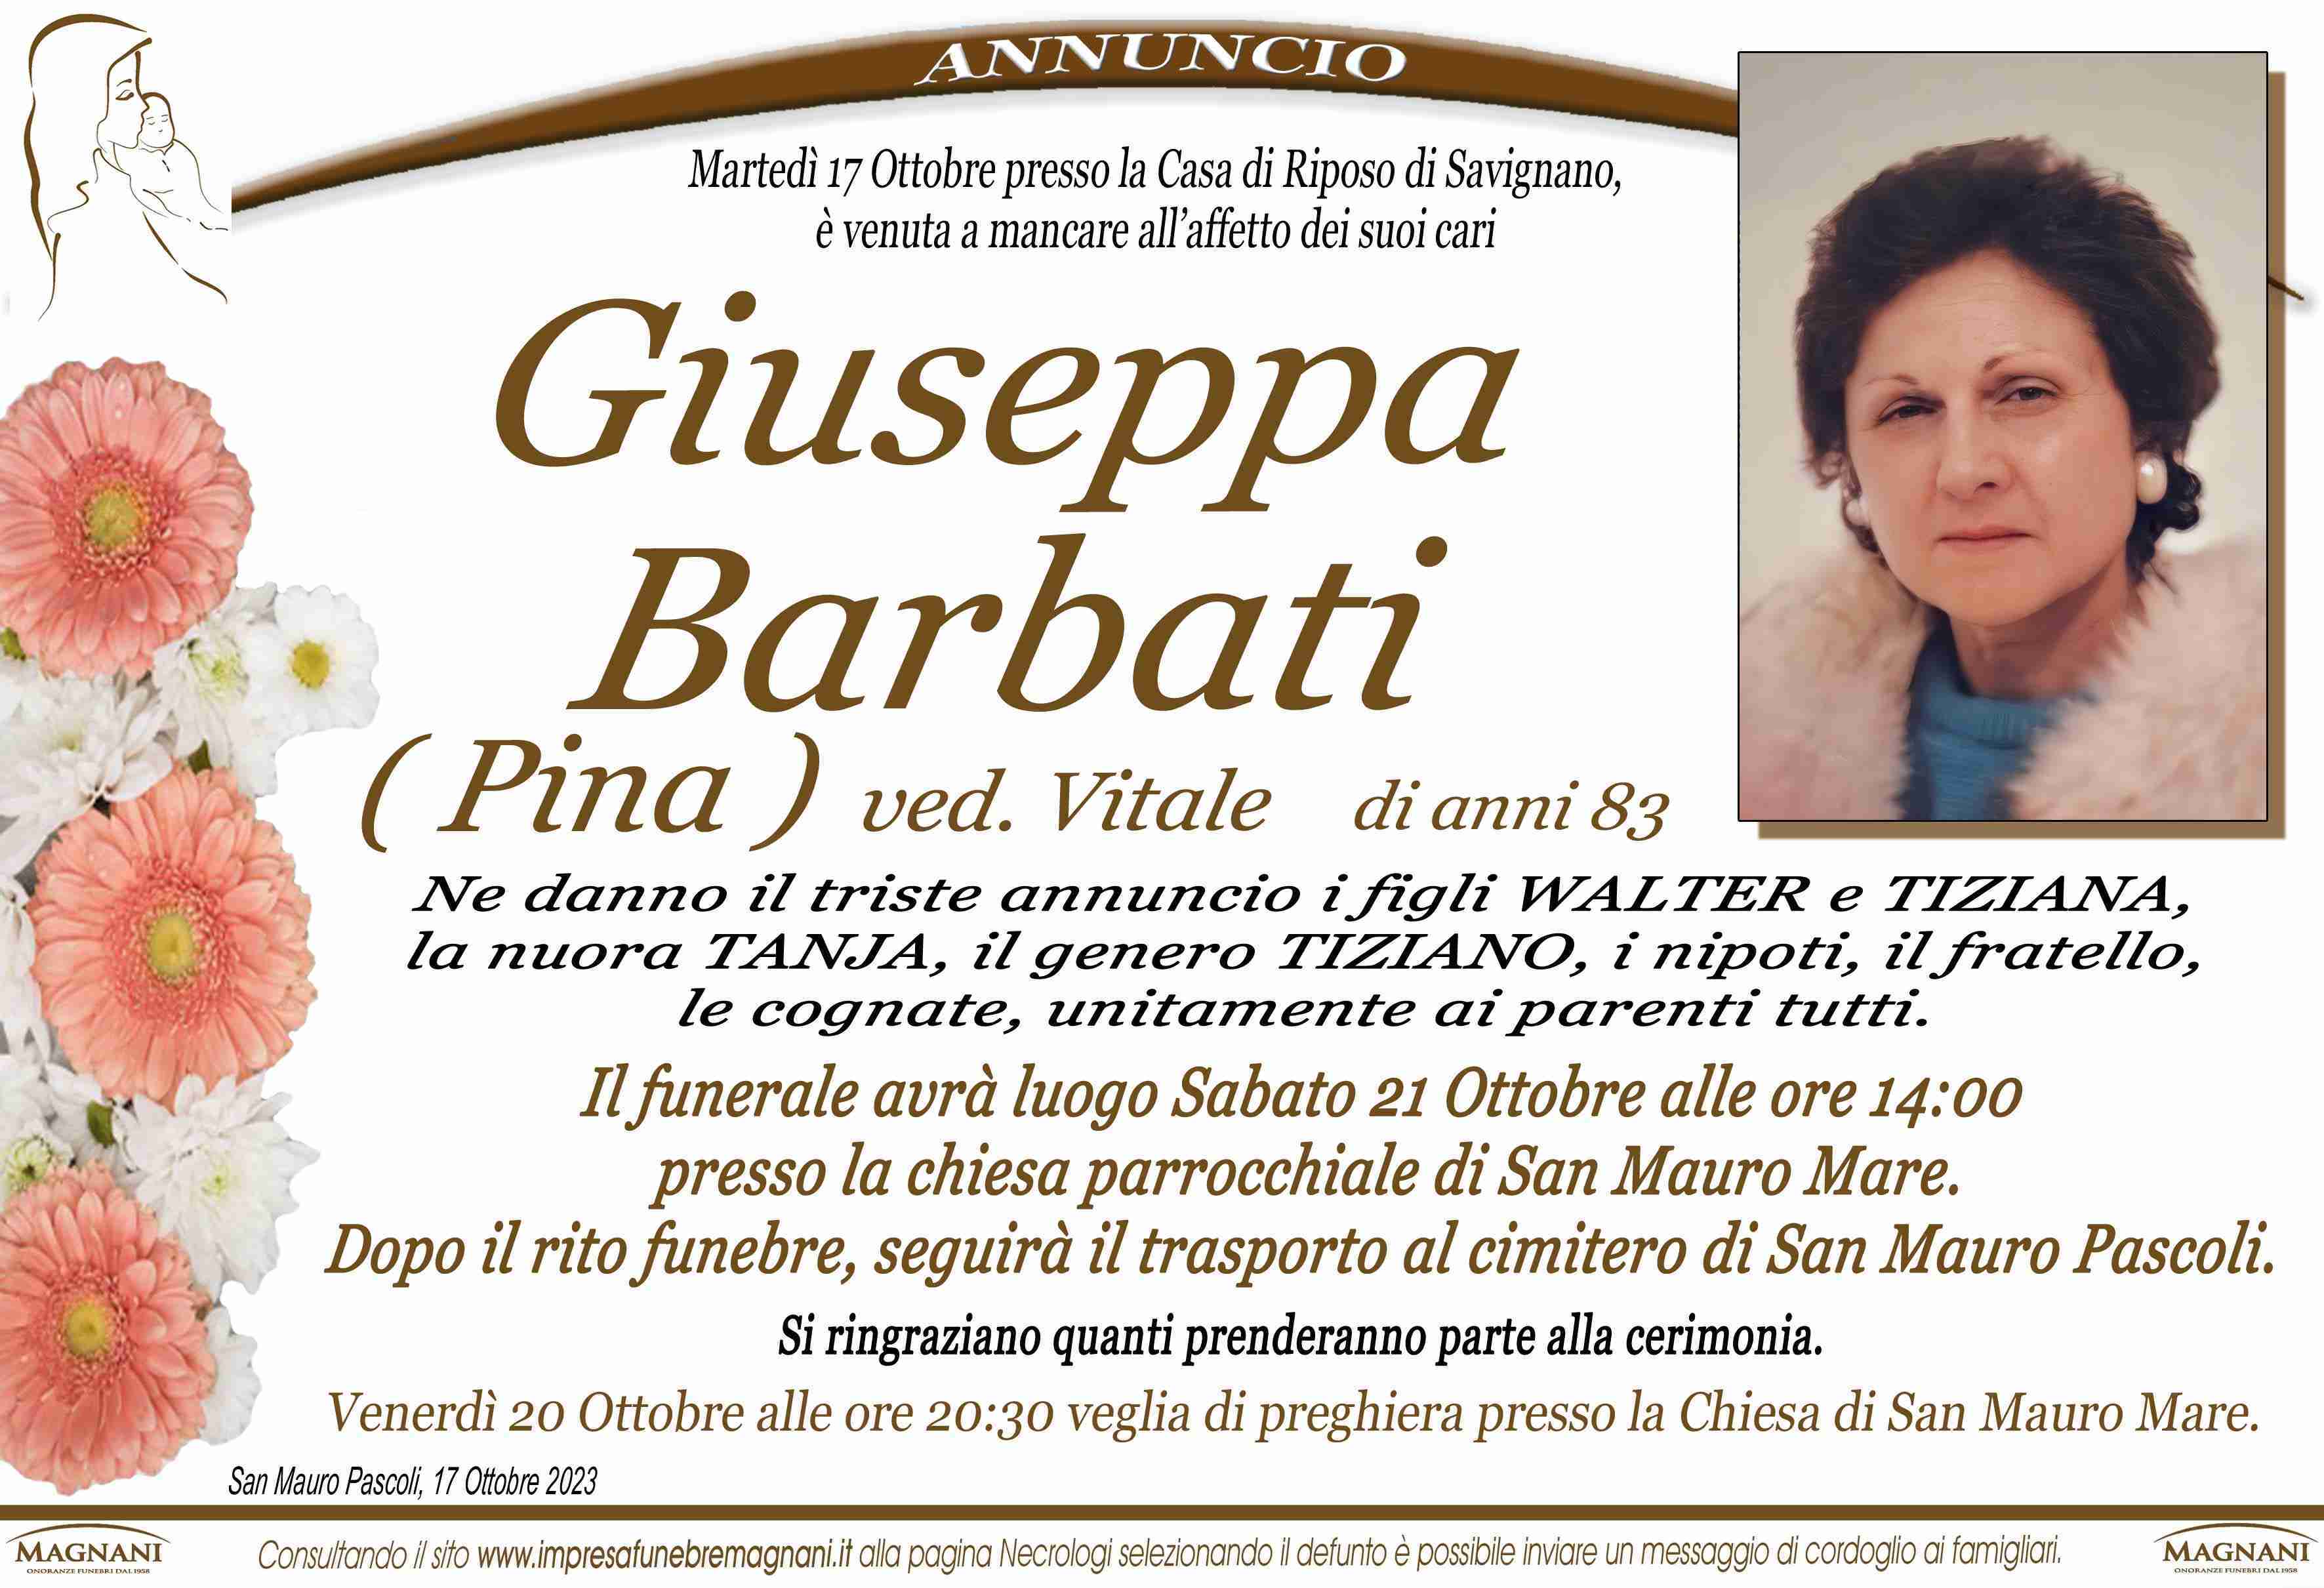 Giuseppa Barbati